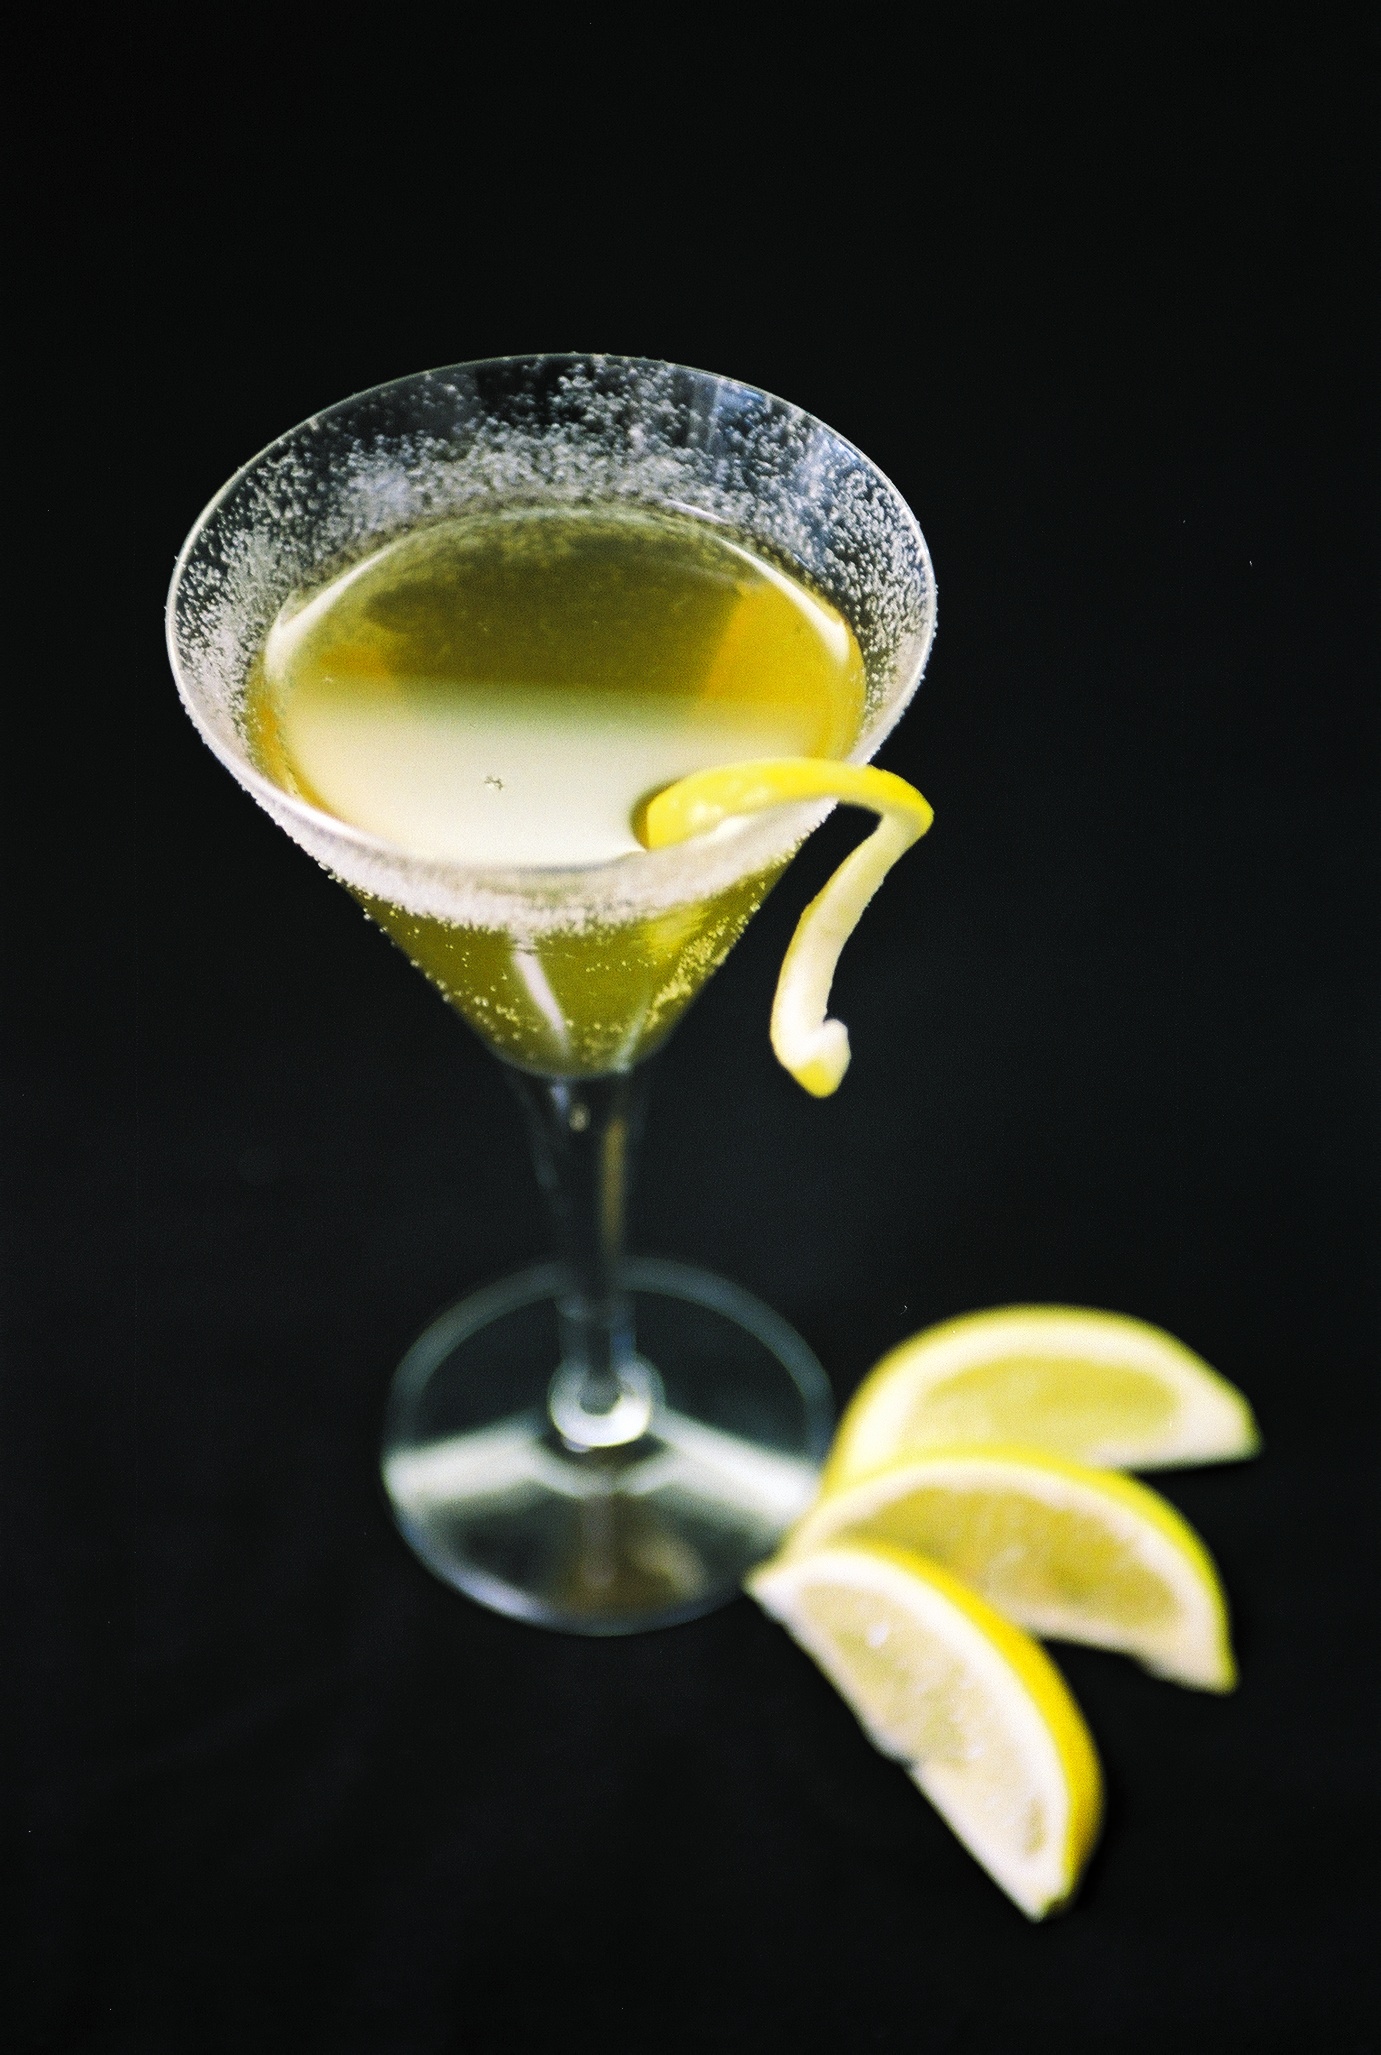 https://upload.wikimedia.org/wikipedia/commons/d/dc/Lemon-inspired_signature_cocktail.jpg